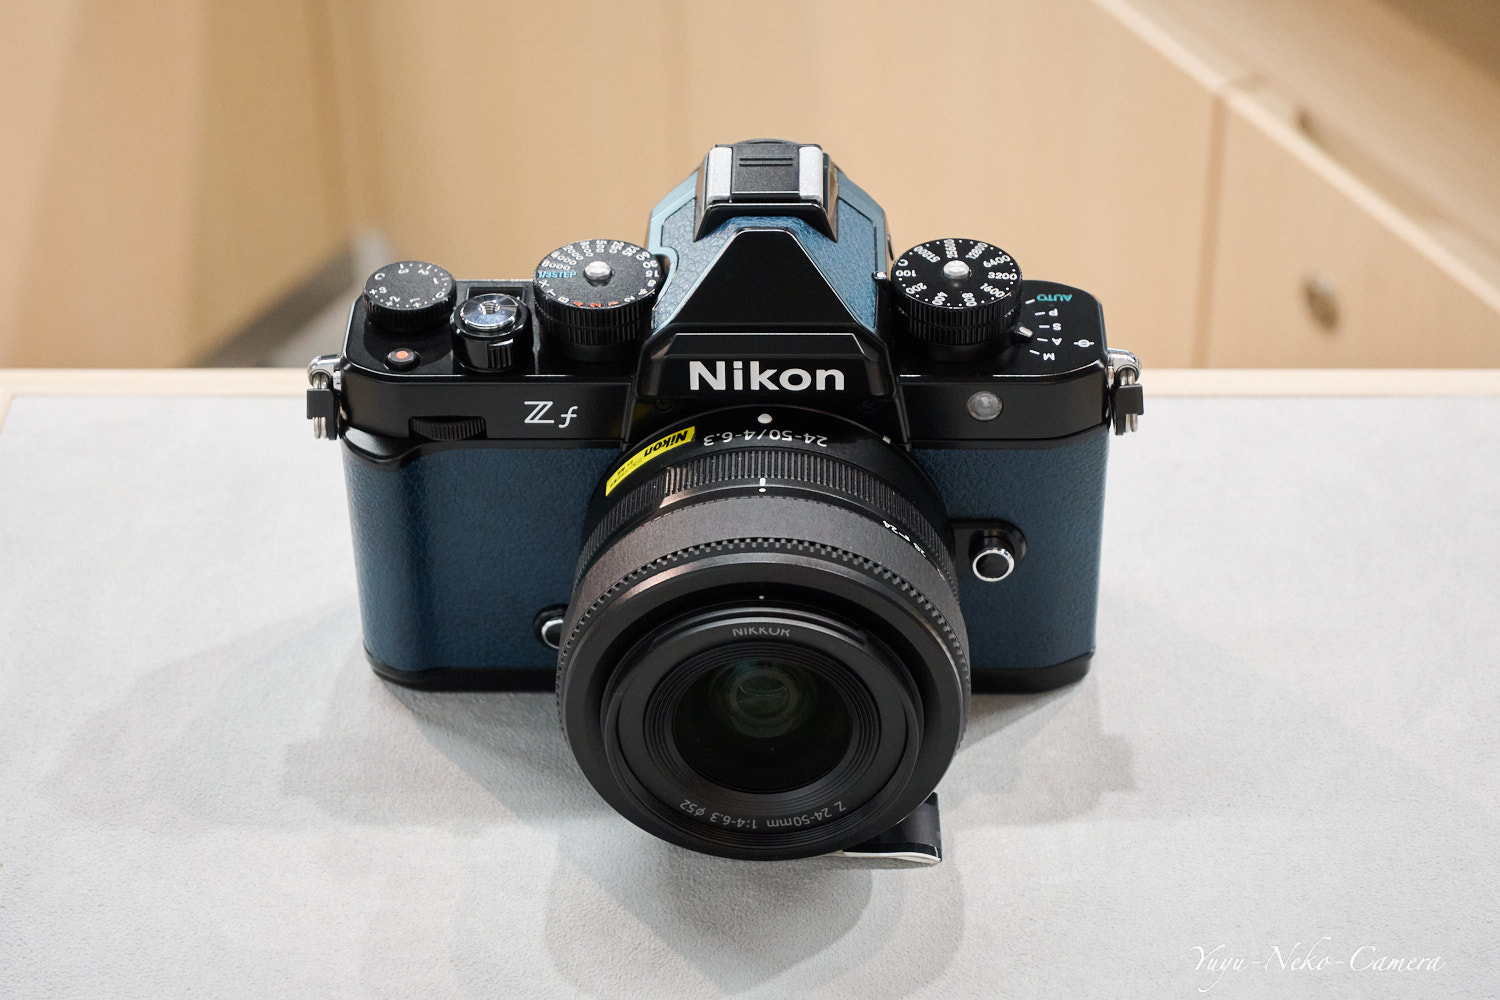 Nikon Zf + NIKKOR Z 24-50mm f/4-6.3